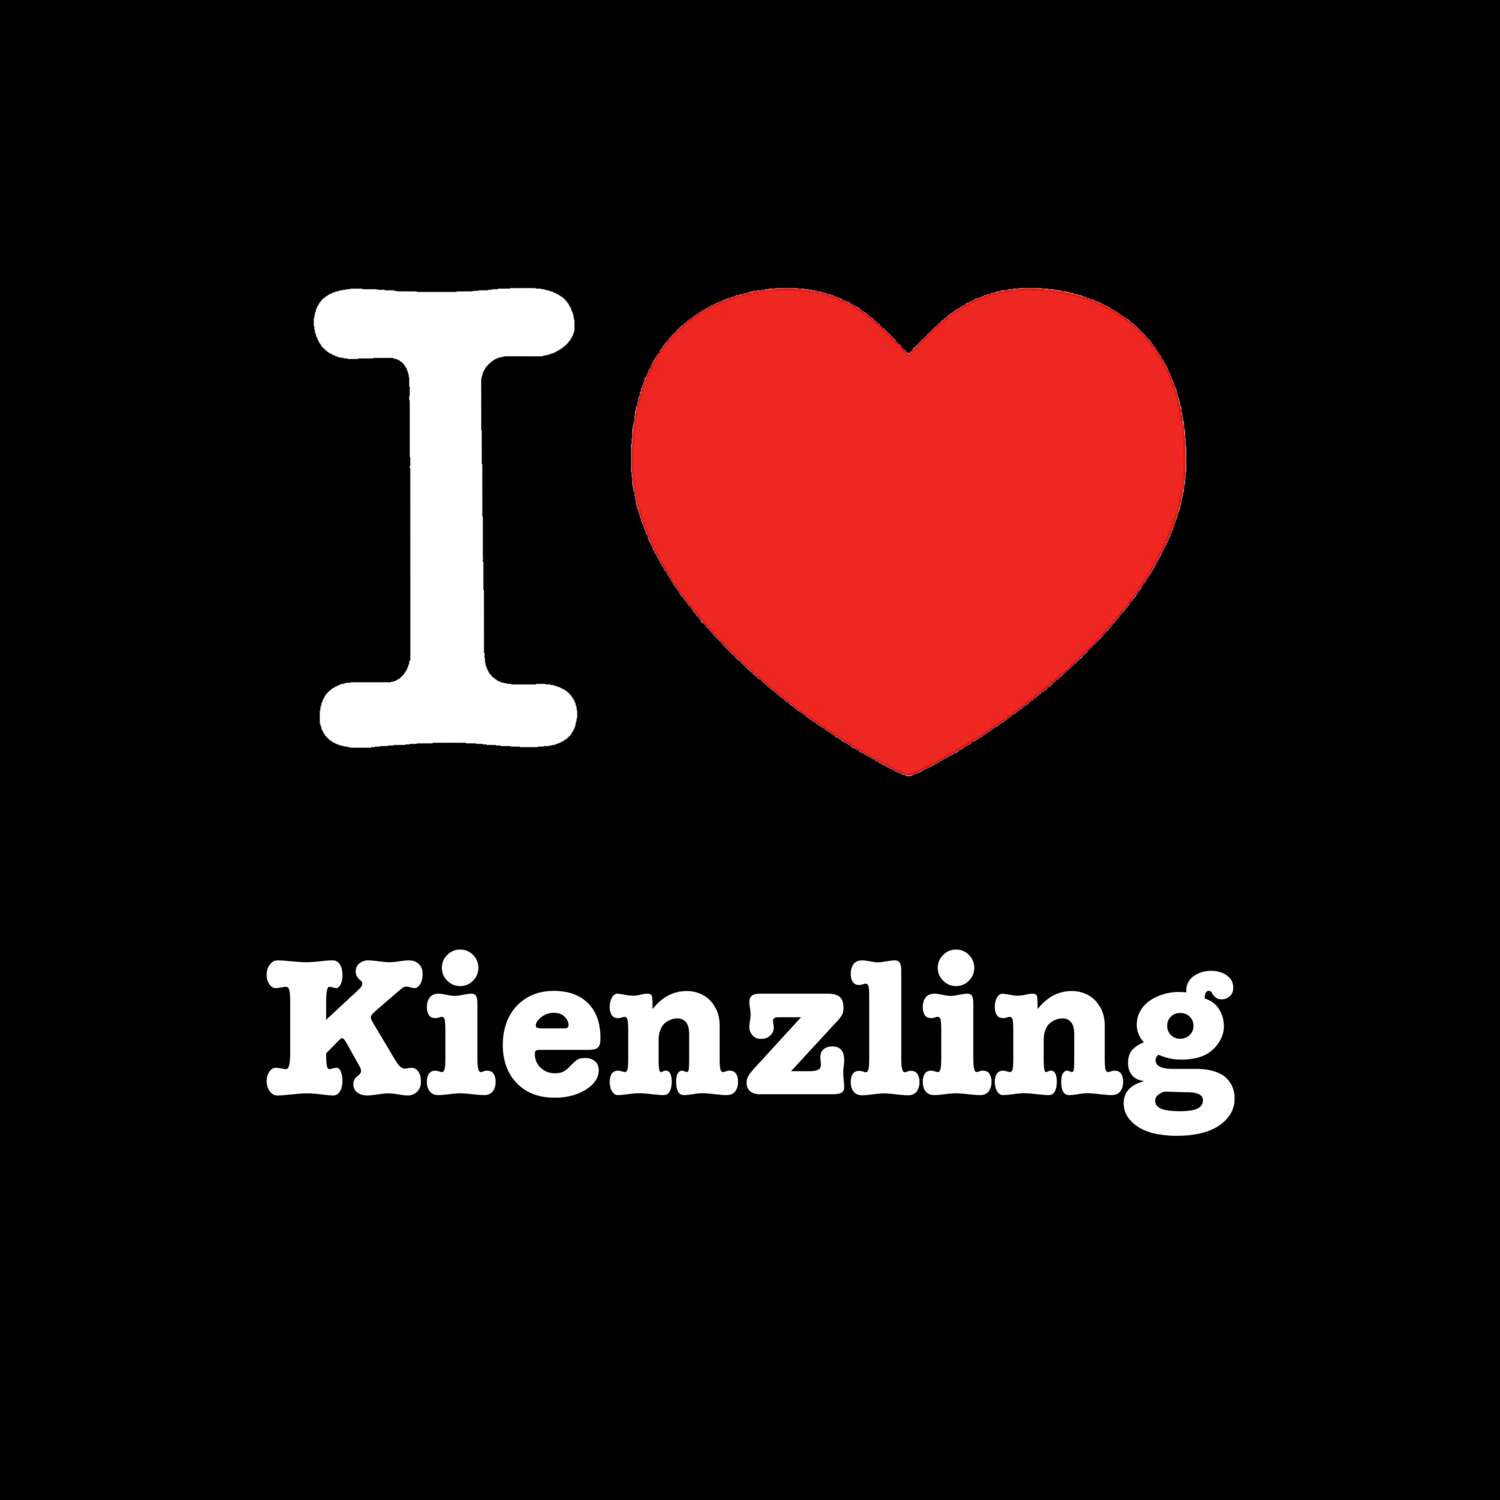 Kienzling T-Shirt »I love«